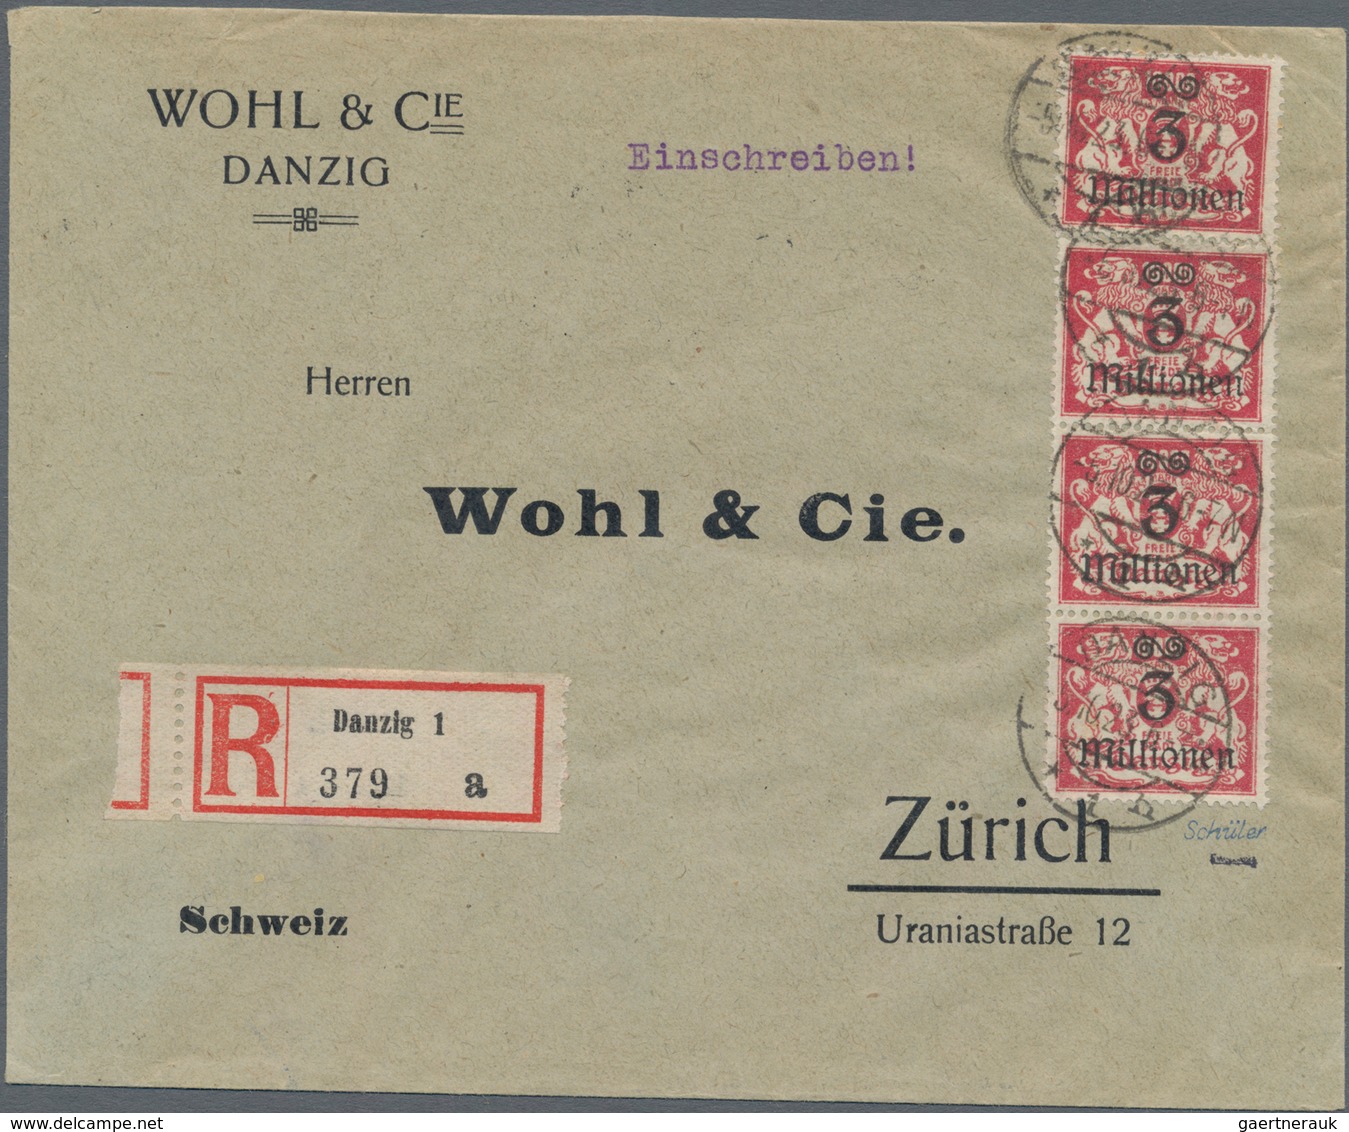 Danzig: 1920/1939, gehaltvolle Sammlung mit ca.120 Belegen, dabei viele besserere Frankaturen und be